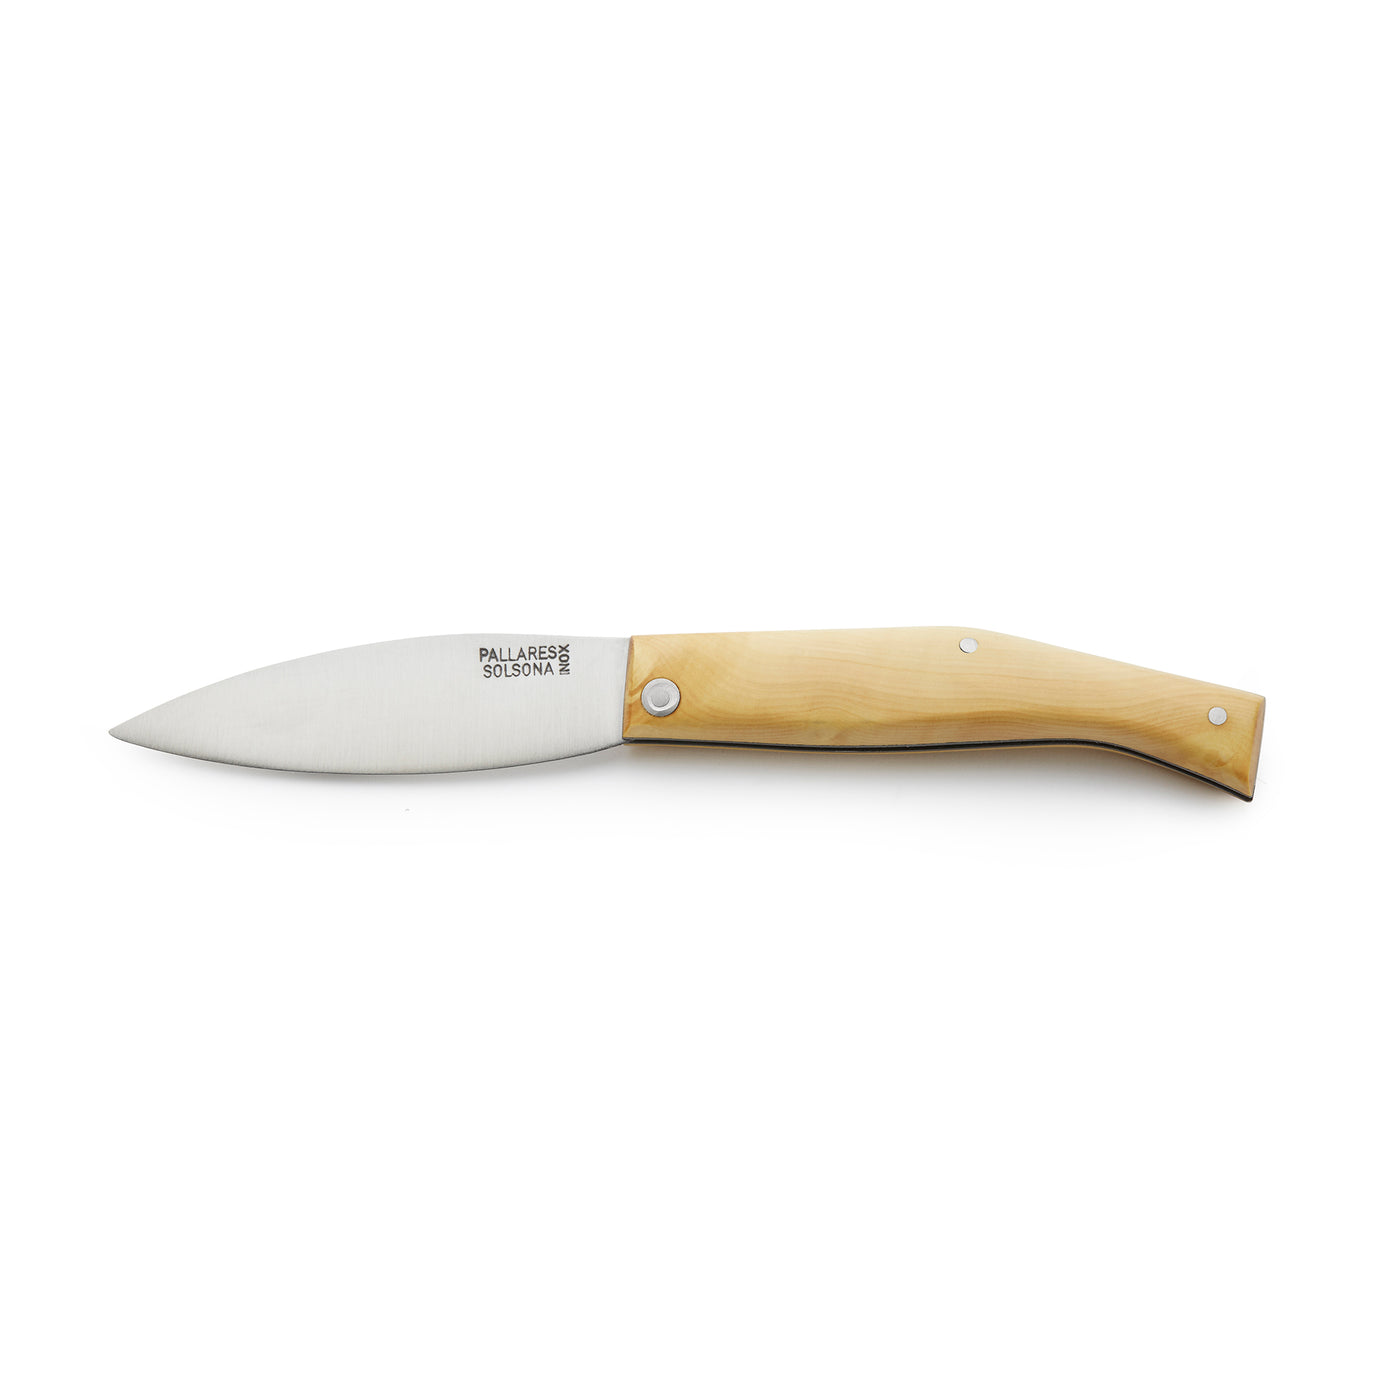 Boxwood Handle Pocket Knife BUSA Number 0